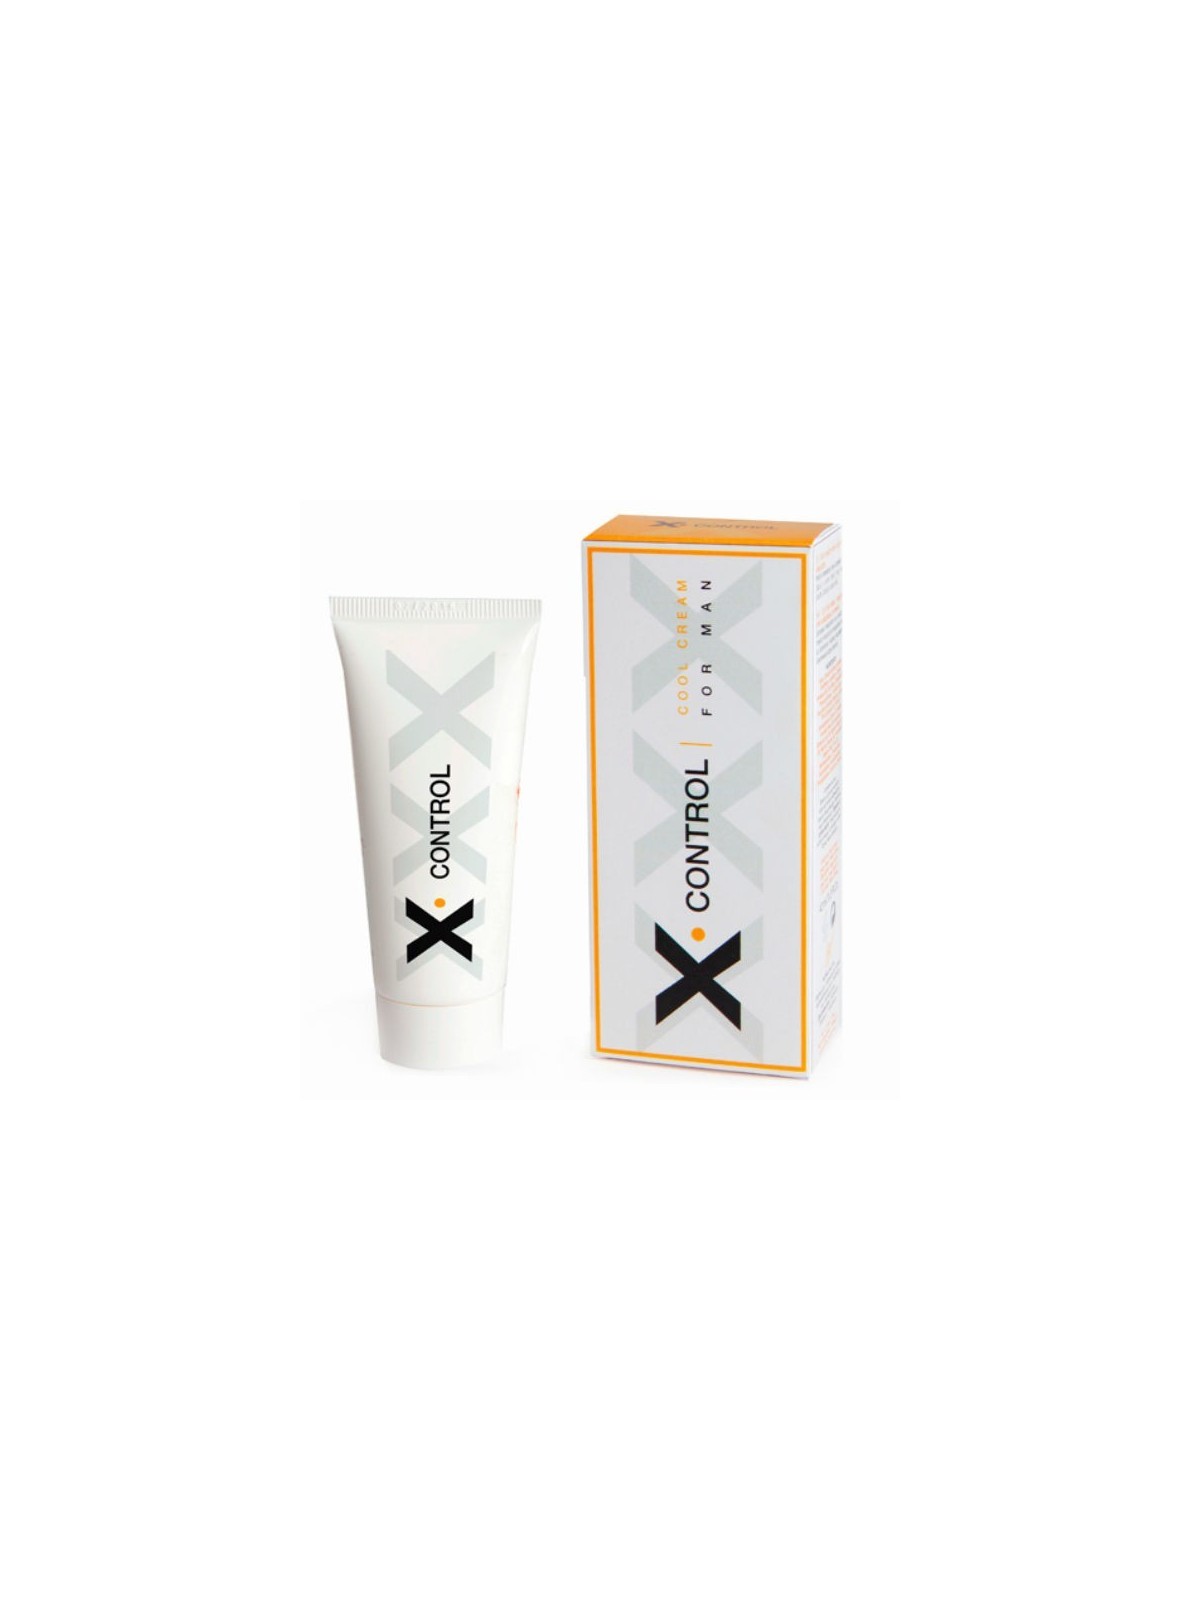 X Control Crema Efecto Frío Para Hombre - Comprar Retardante Ruf - Retardantes (1)